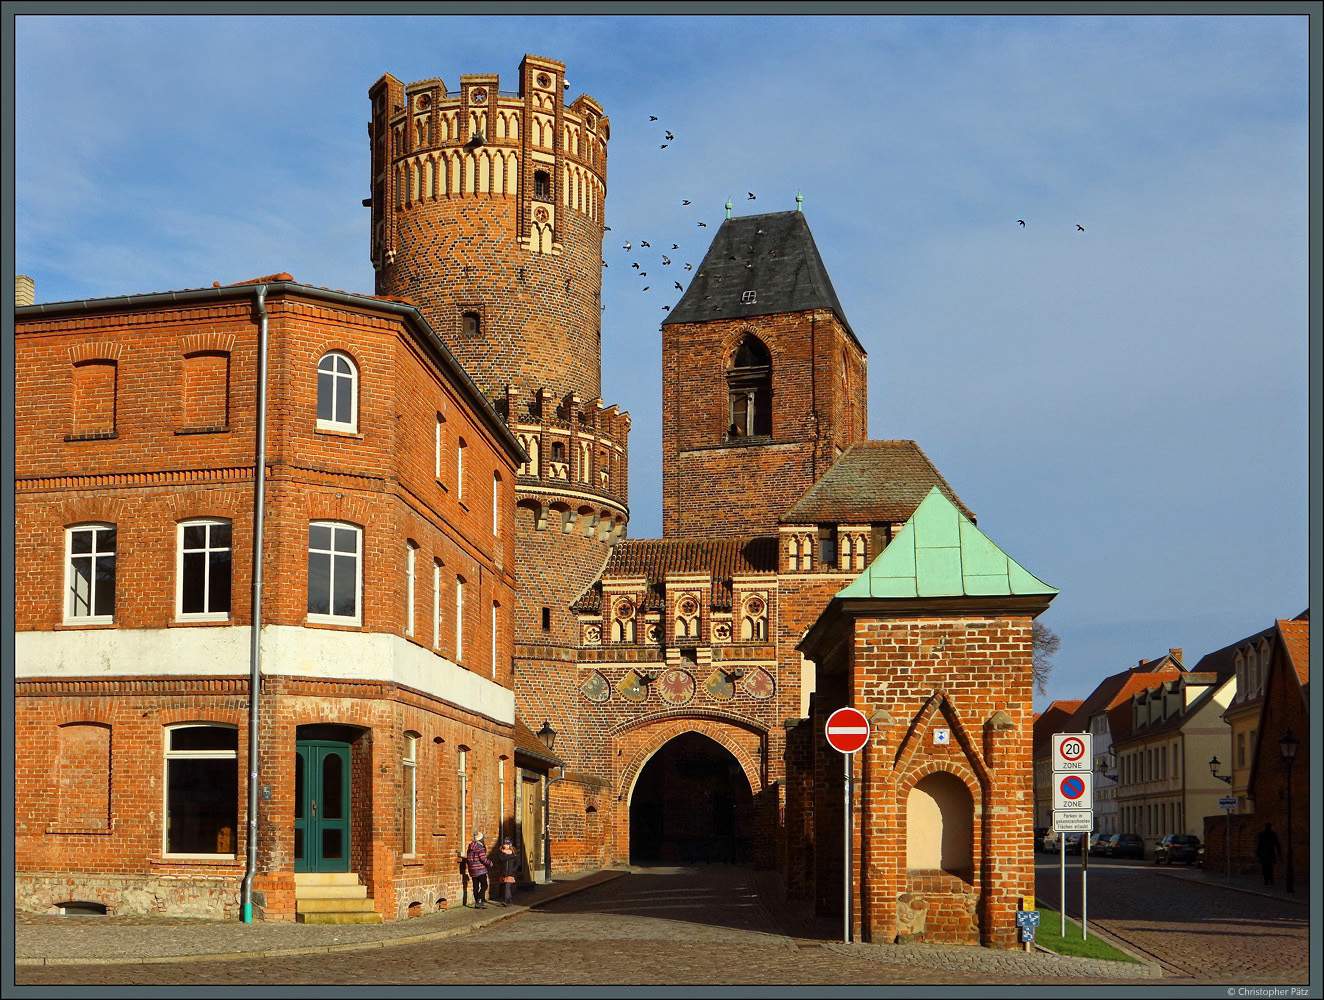 Das Neustdter Tor in Tangermnde zhlt zu den eindrucksvollen Bauten der Backsteingotik. Die Toranlage wurde in mehreren Bauphasen ab 1300 errichtet. Dahinter erhebt sich der Turm der ehemaligen Nikolaikirche. (05.02.2023)